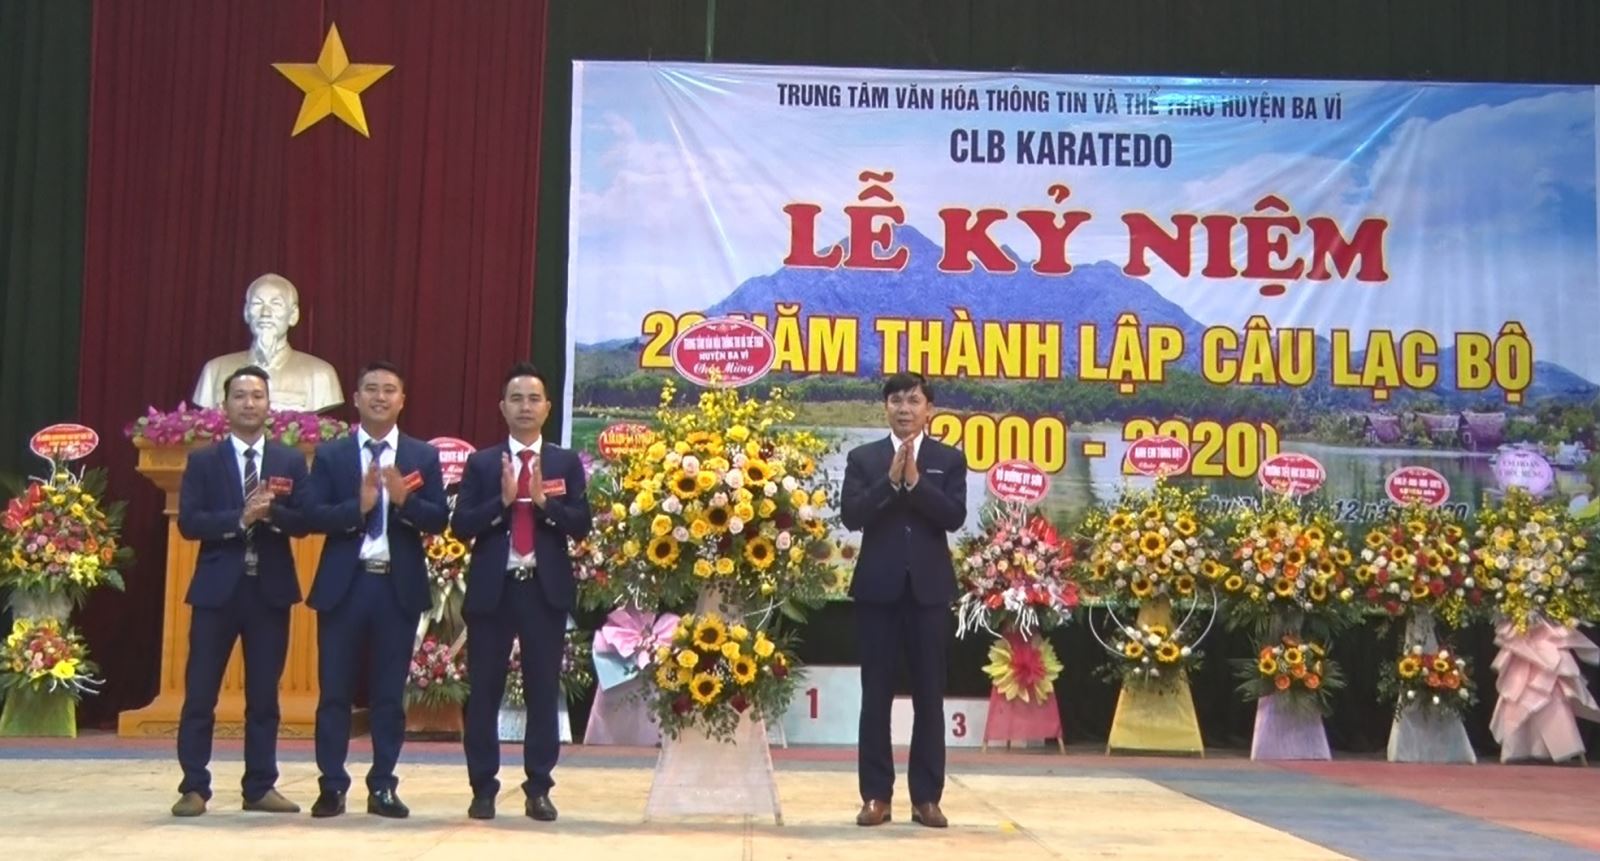 TP Hà Nội: Trung tâm Văn hóa Thông tin và Thể thao huyện Ba Vì: Lễ kỷ niệm 20 năm thành lập CLB Karatedo Ba Vì